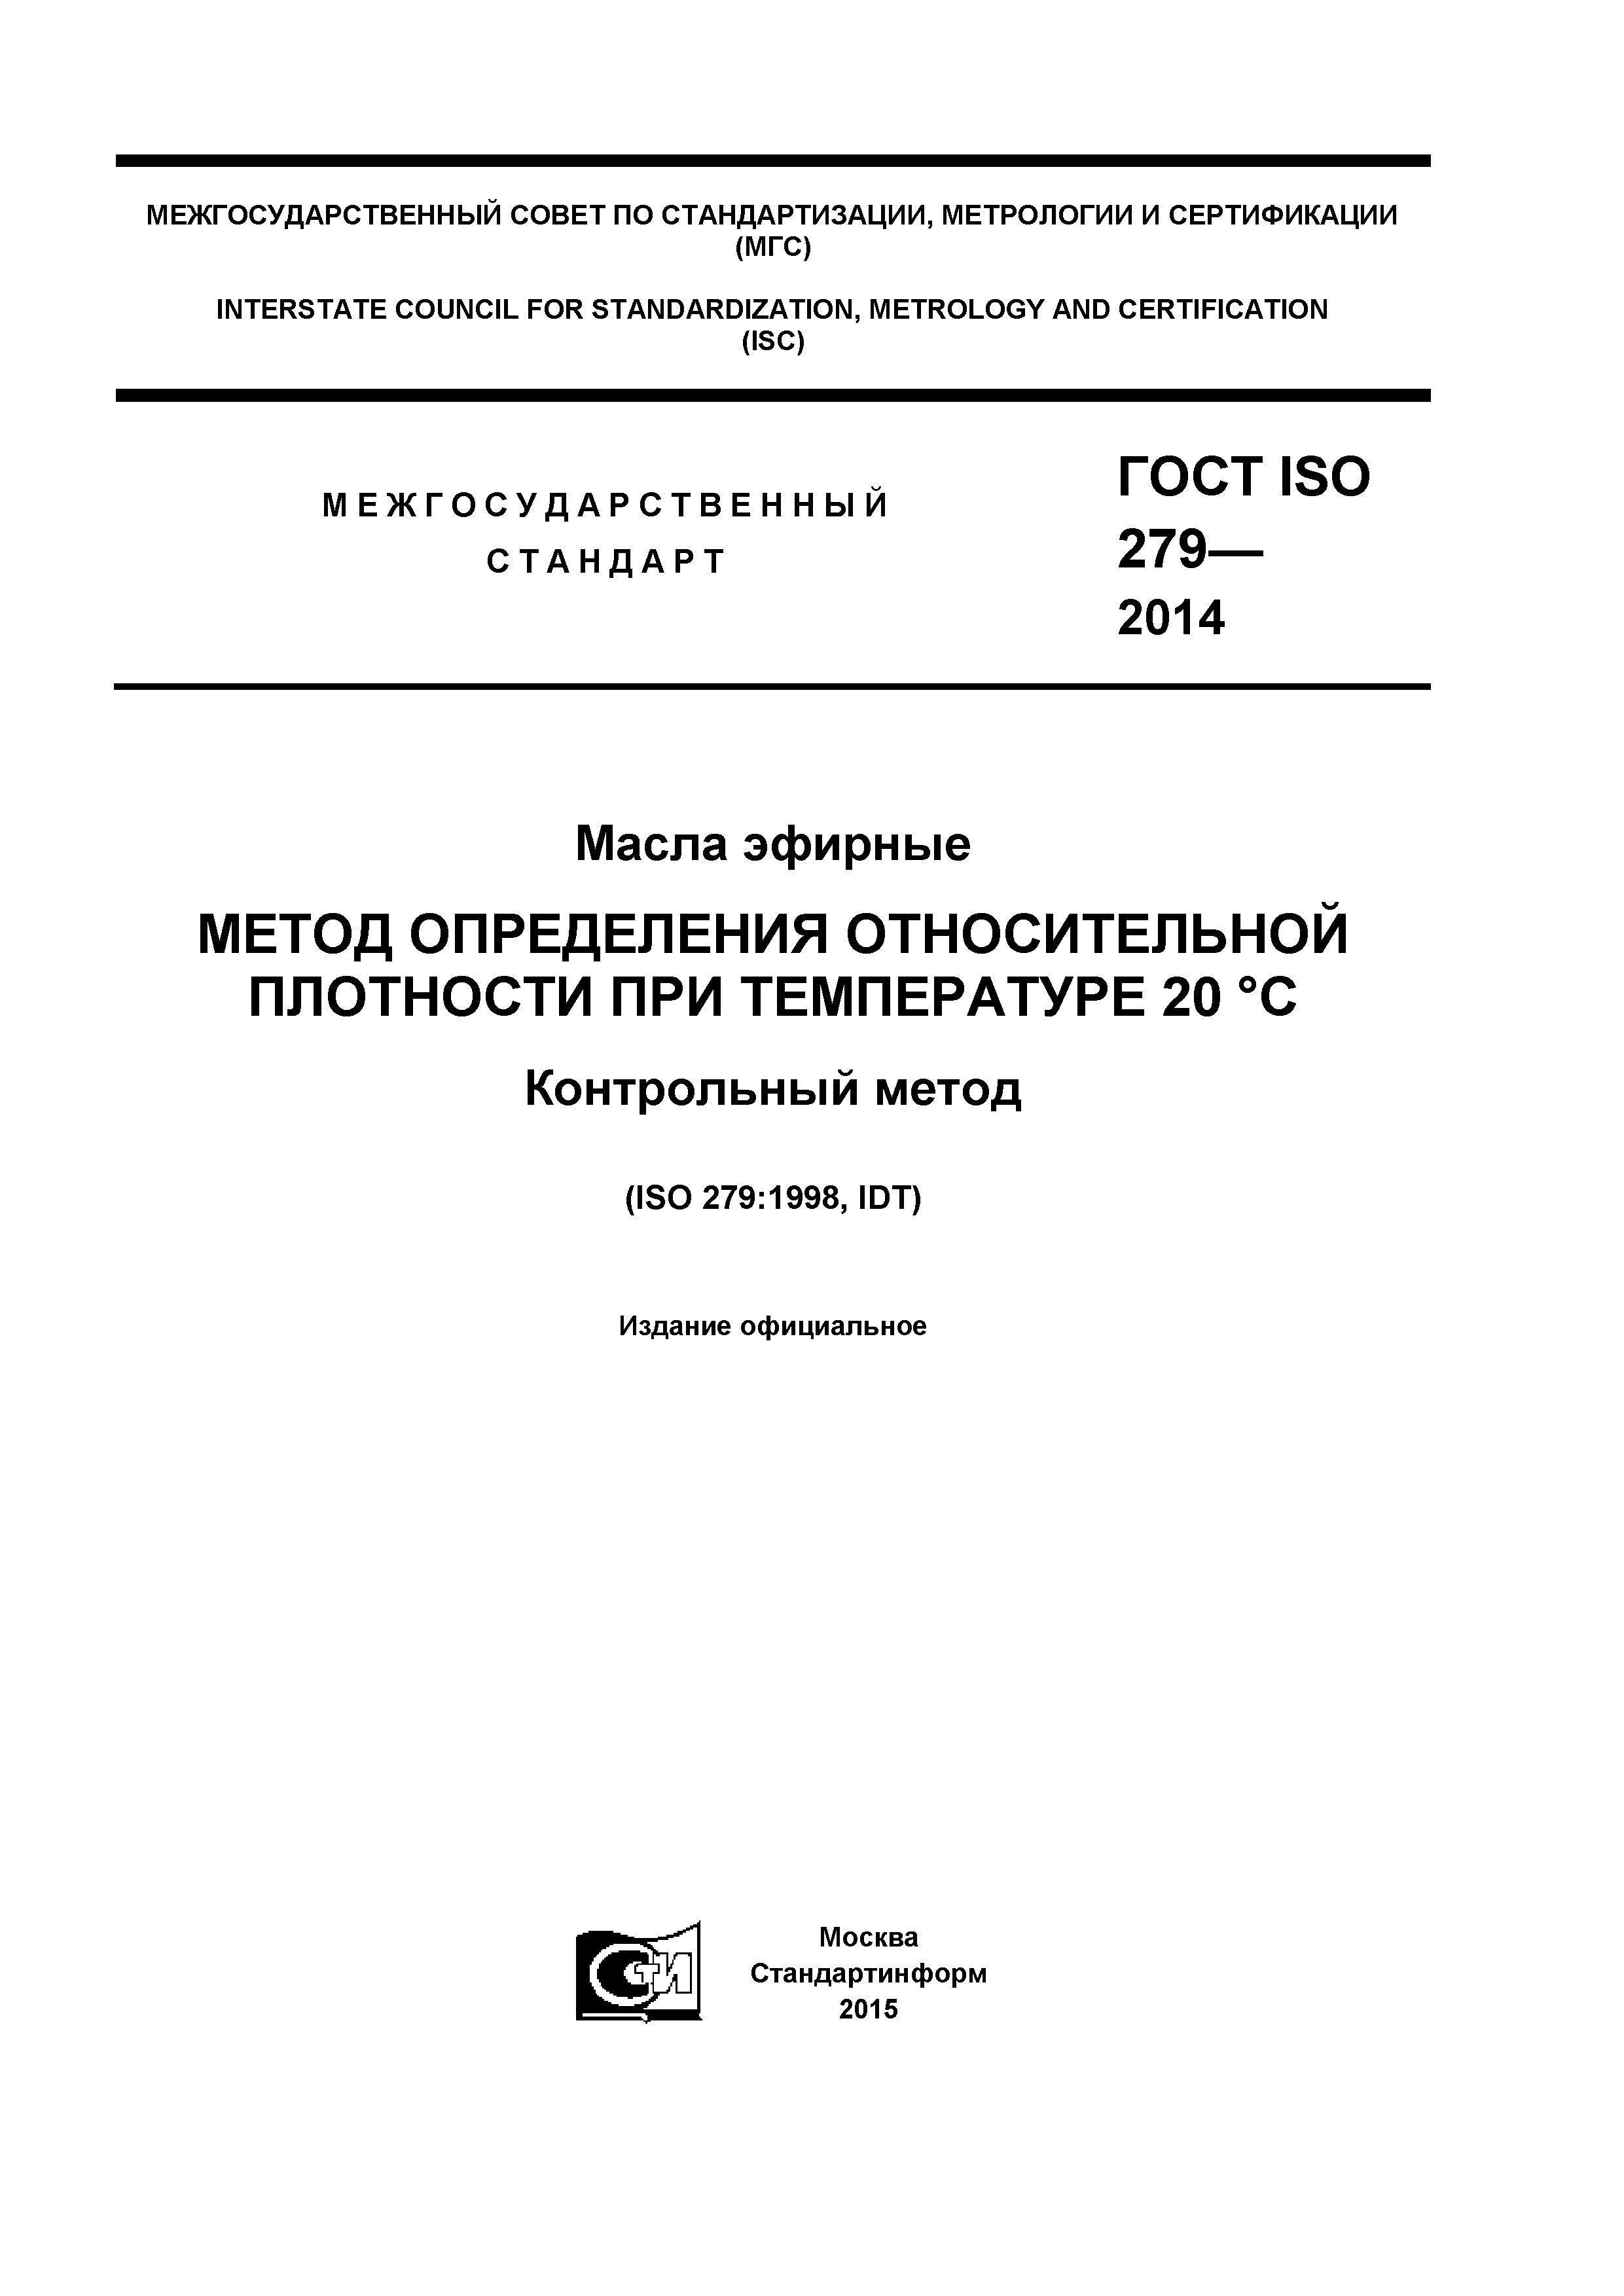 ГОСТ ISO 279-2014